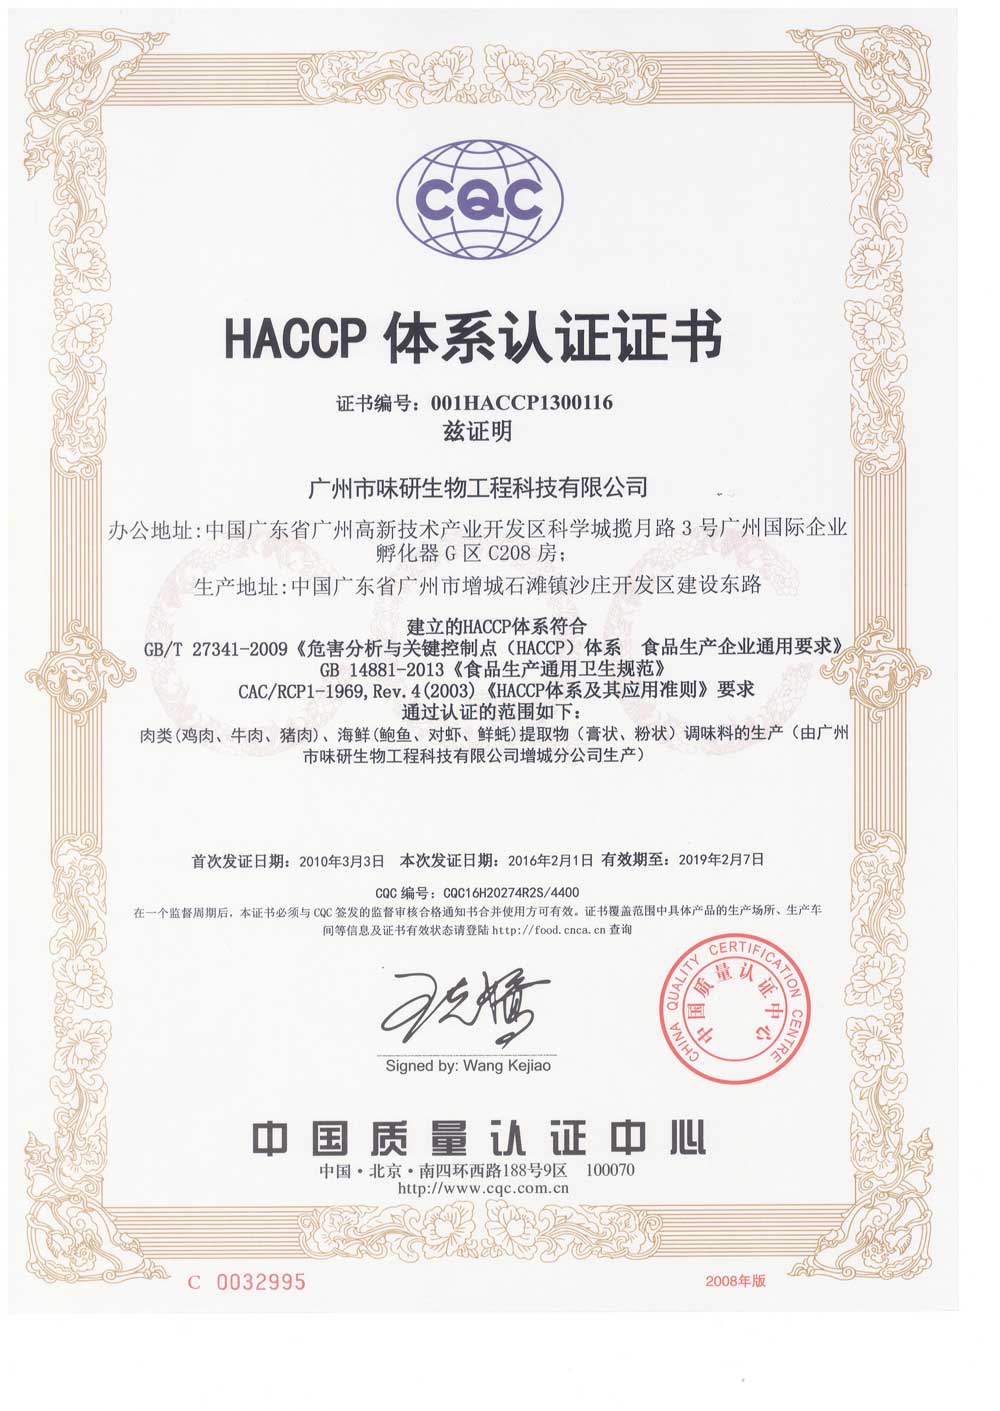 广州市味研生物工程科技有限公司2016年HACCP体系认证证书